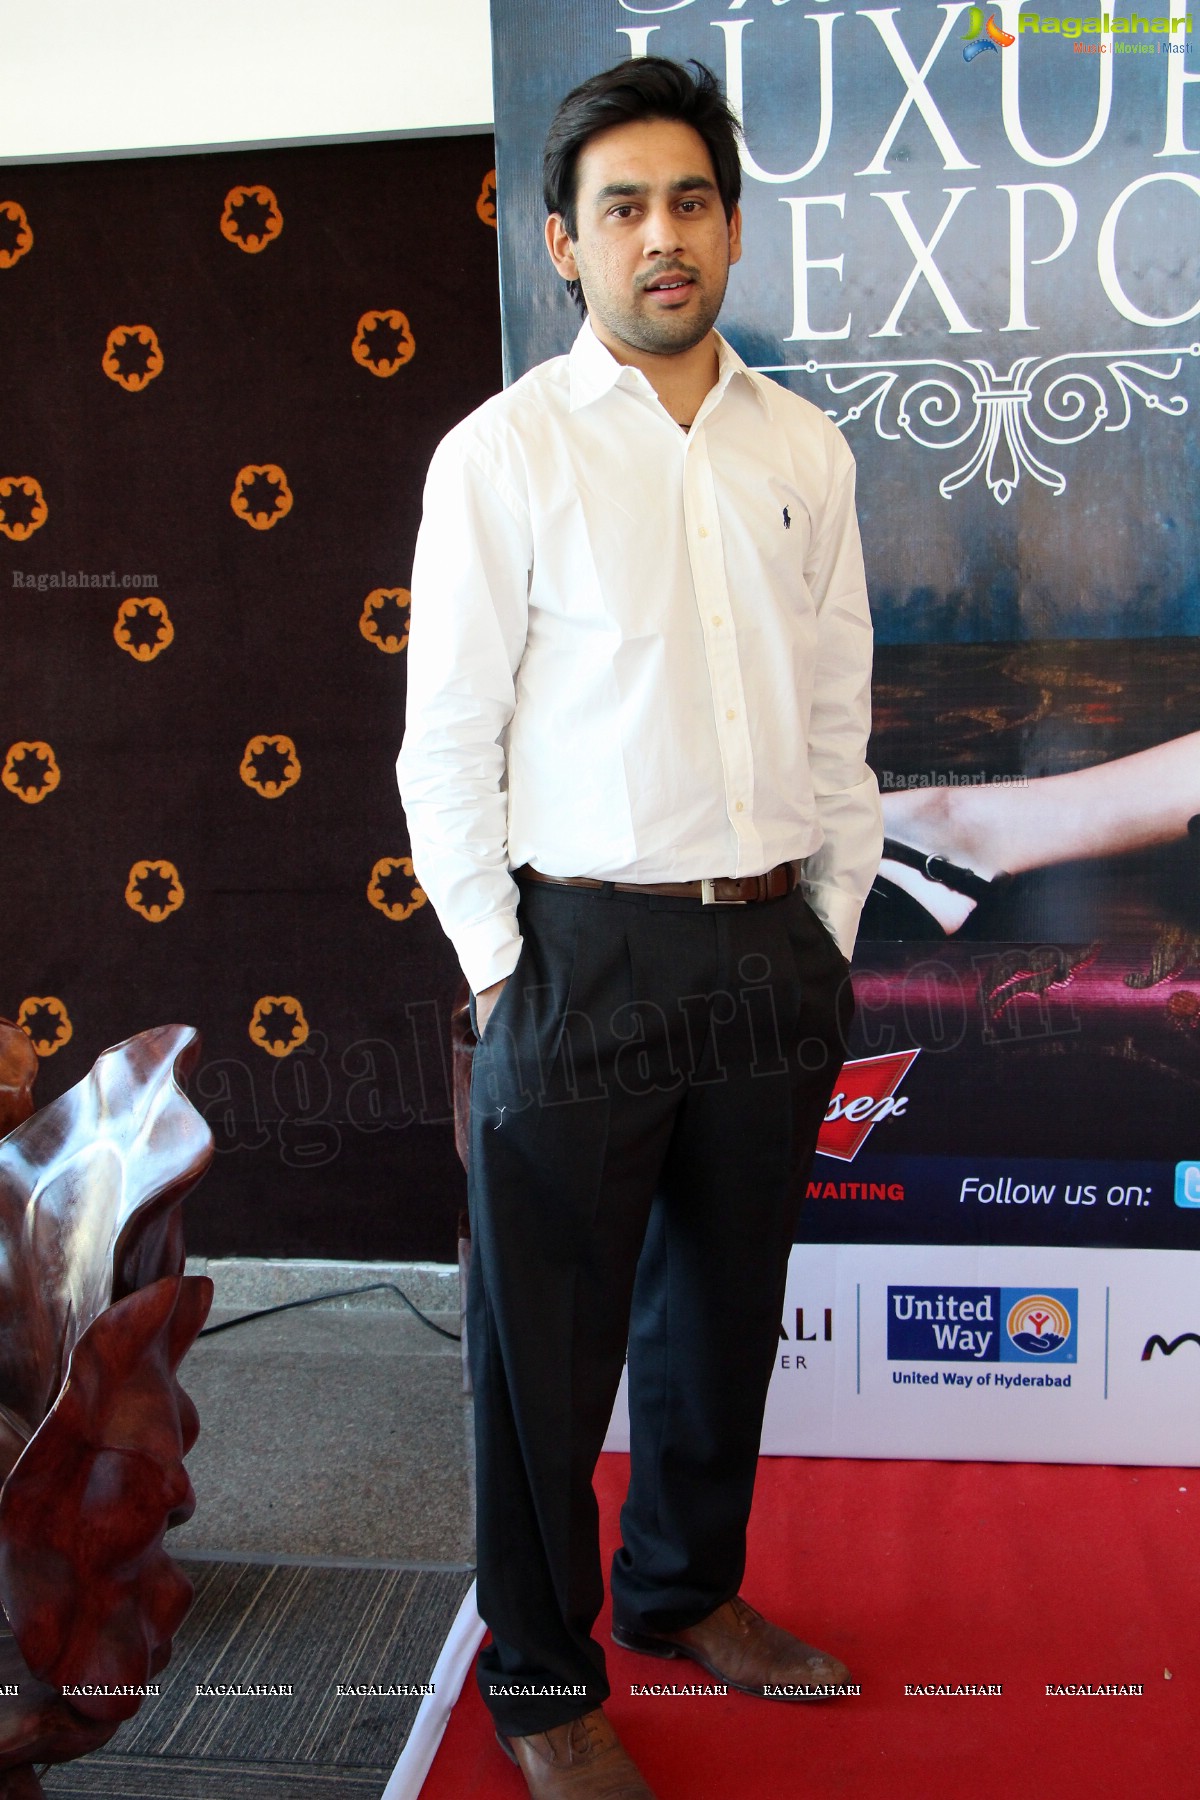 The Indian Luxury Expo 2013 Curtain Raiser, Hyderabad